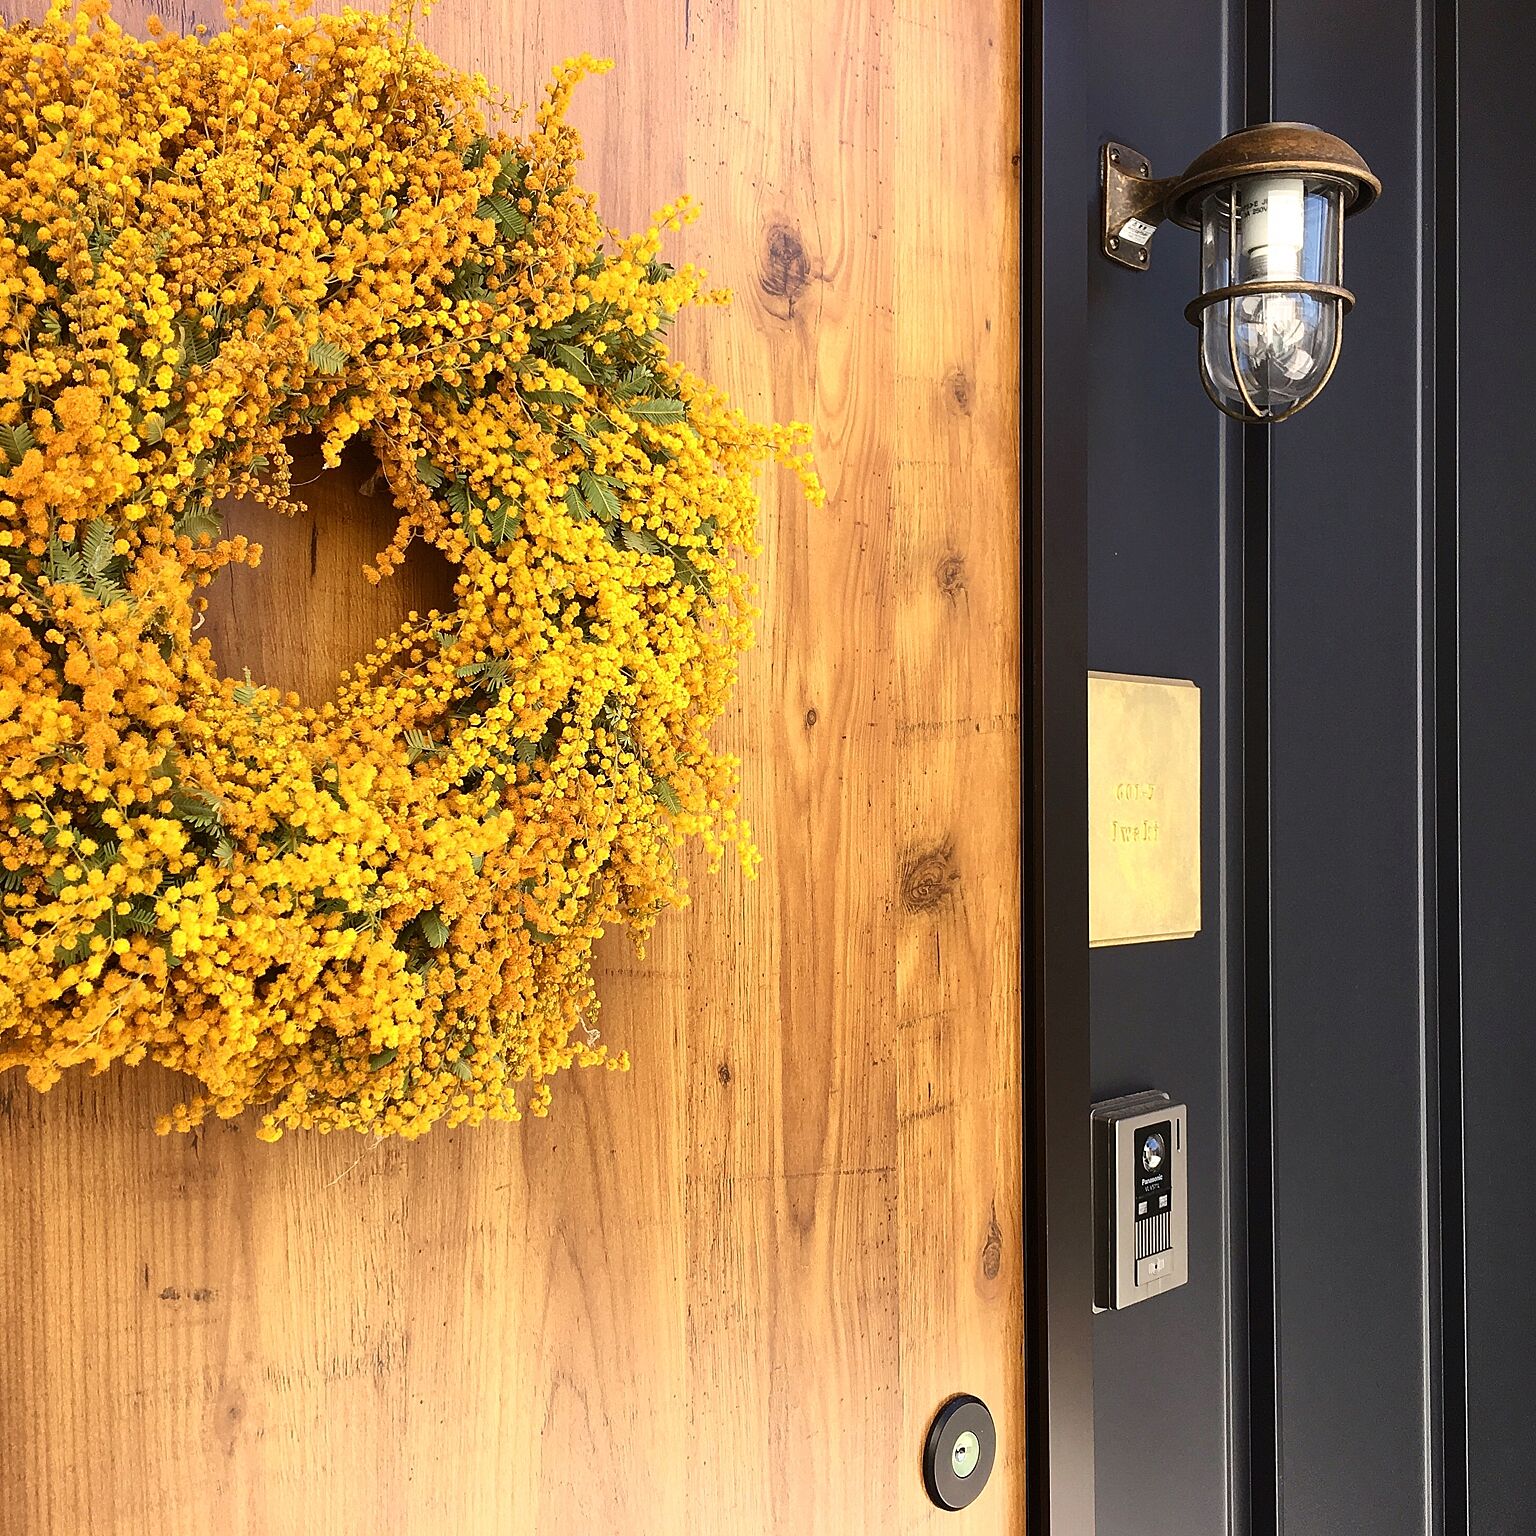 元気をくれるビタミンカラーのお花 ミモザの飾り方アイデア Roomclip Mag 暮らしとインテリアのwebマガジン